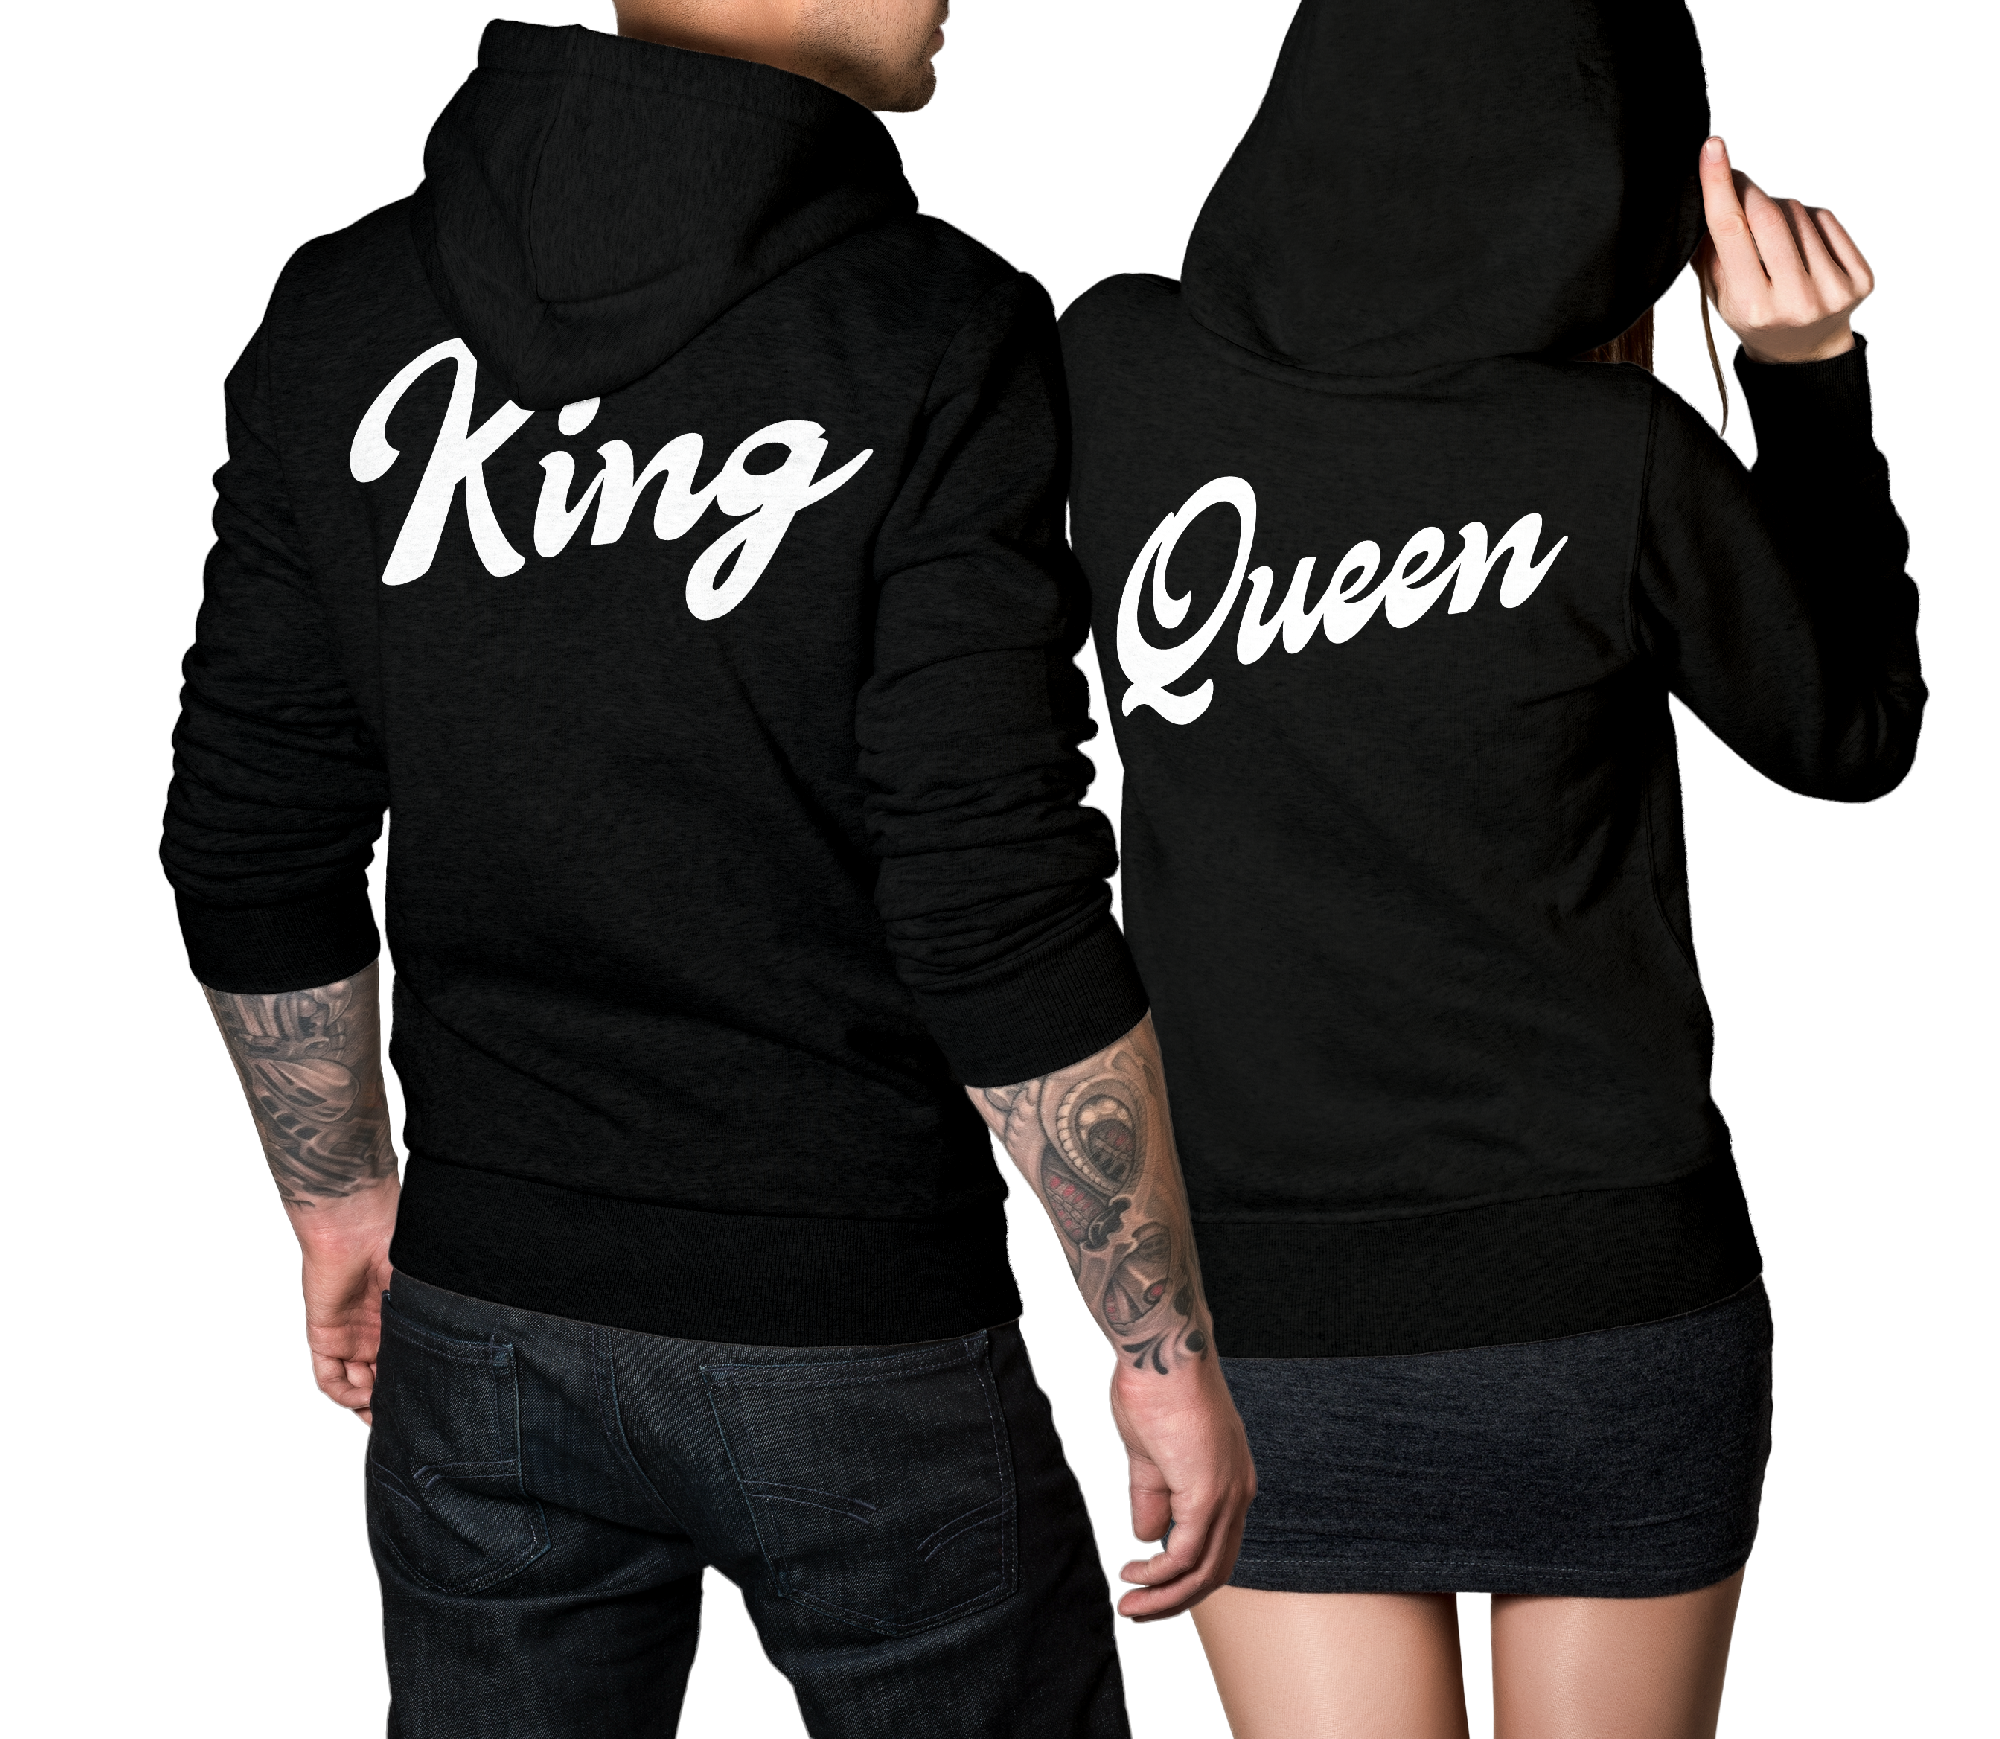 King & Queen Pullover Pärchen Set schwarz / weiss Handschrift Back